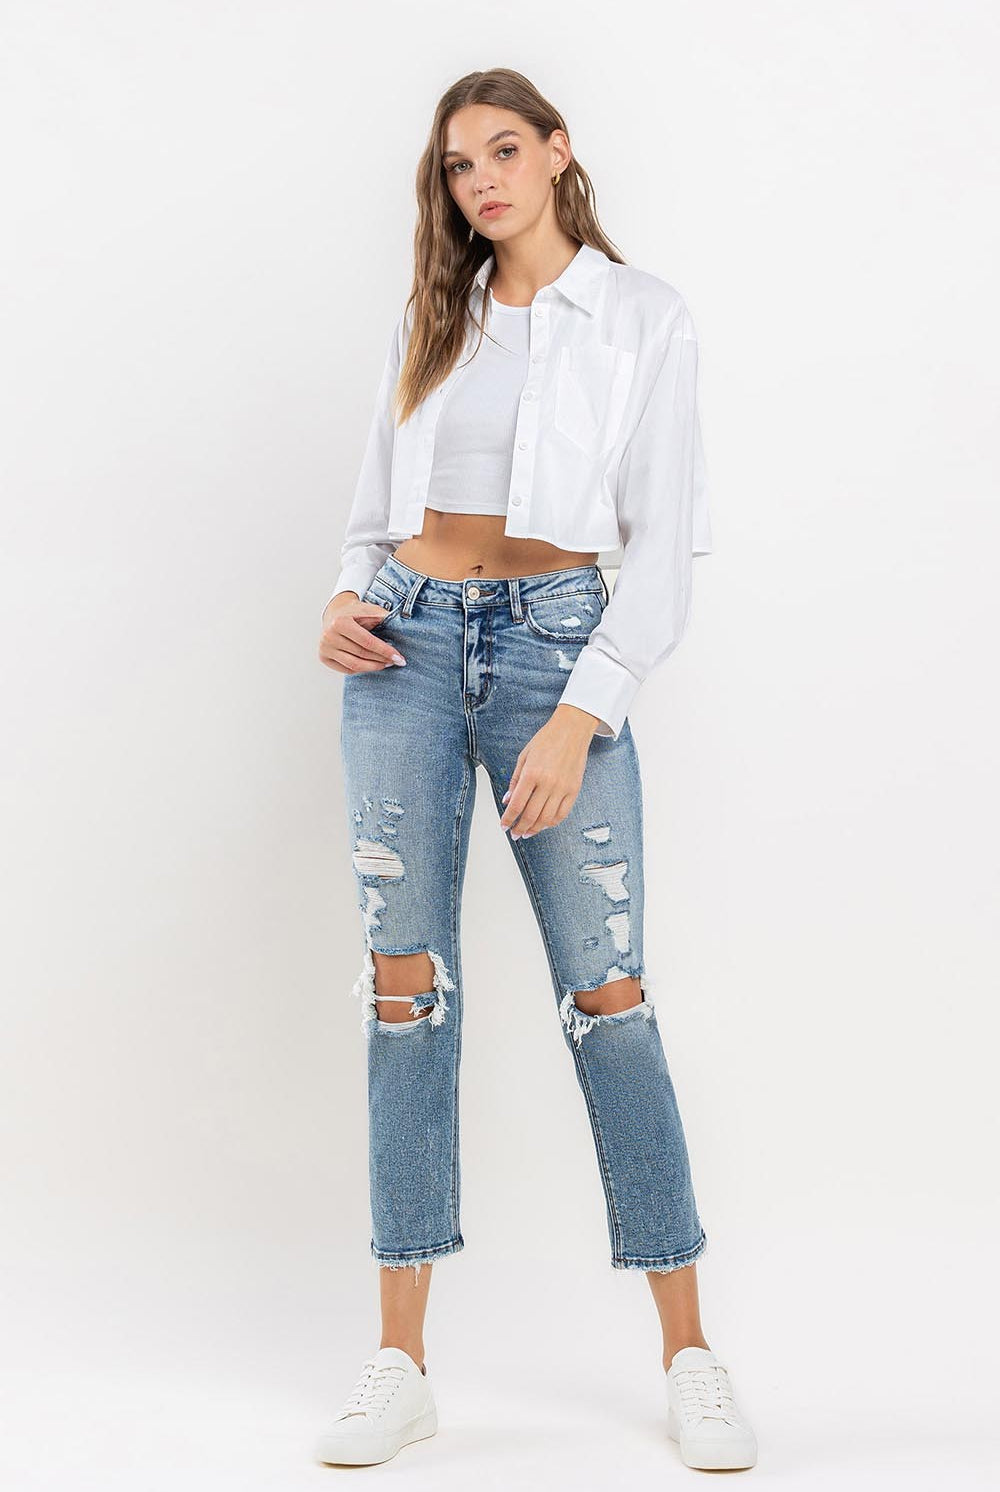 Lavender Lovervet Full Size High Rise Slim Straight Jeans Denim